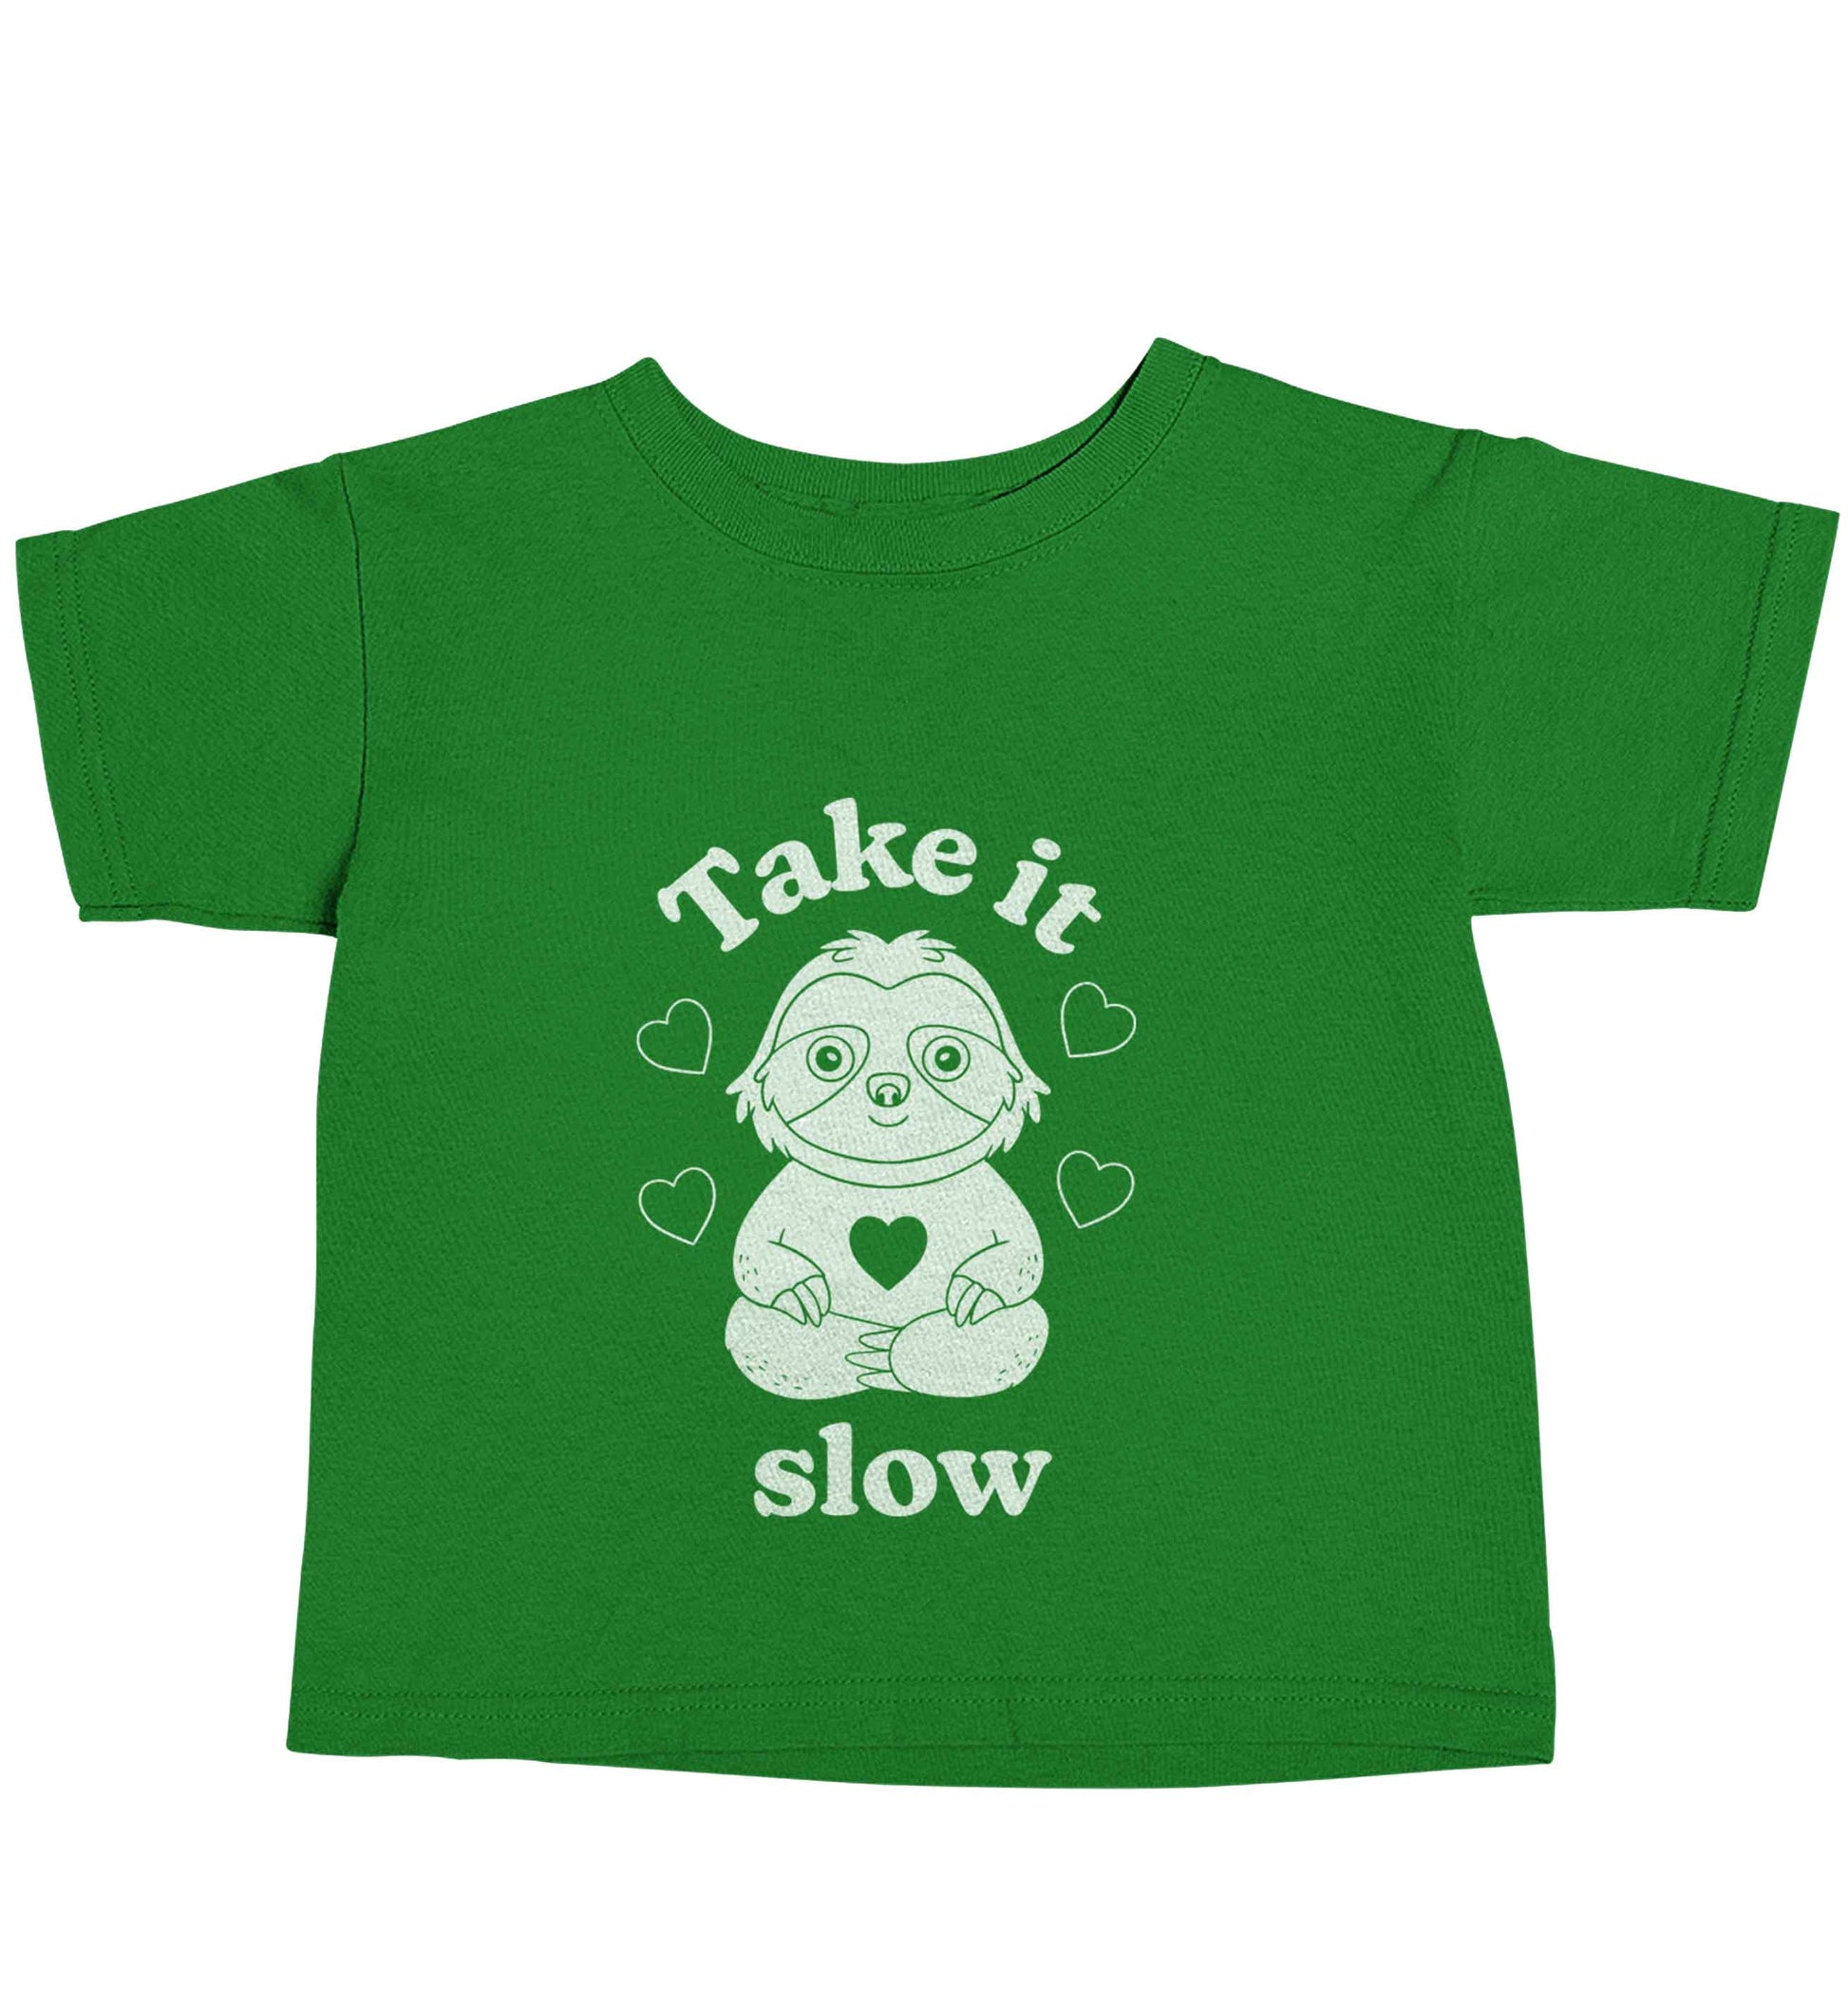 Take it slow green baby toddler Tshirt 2 Years